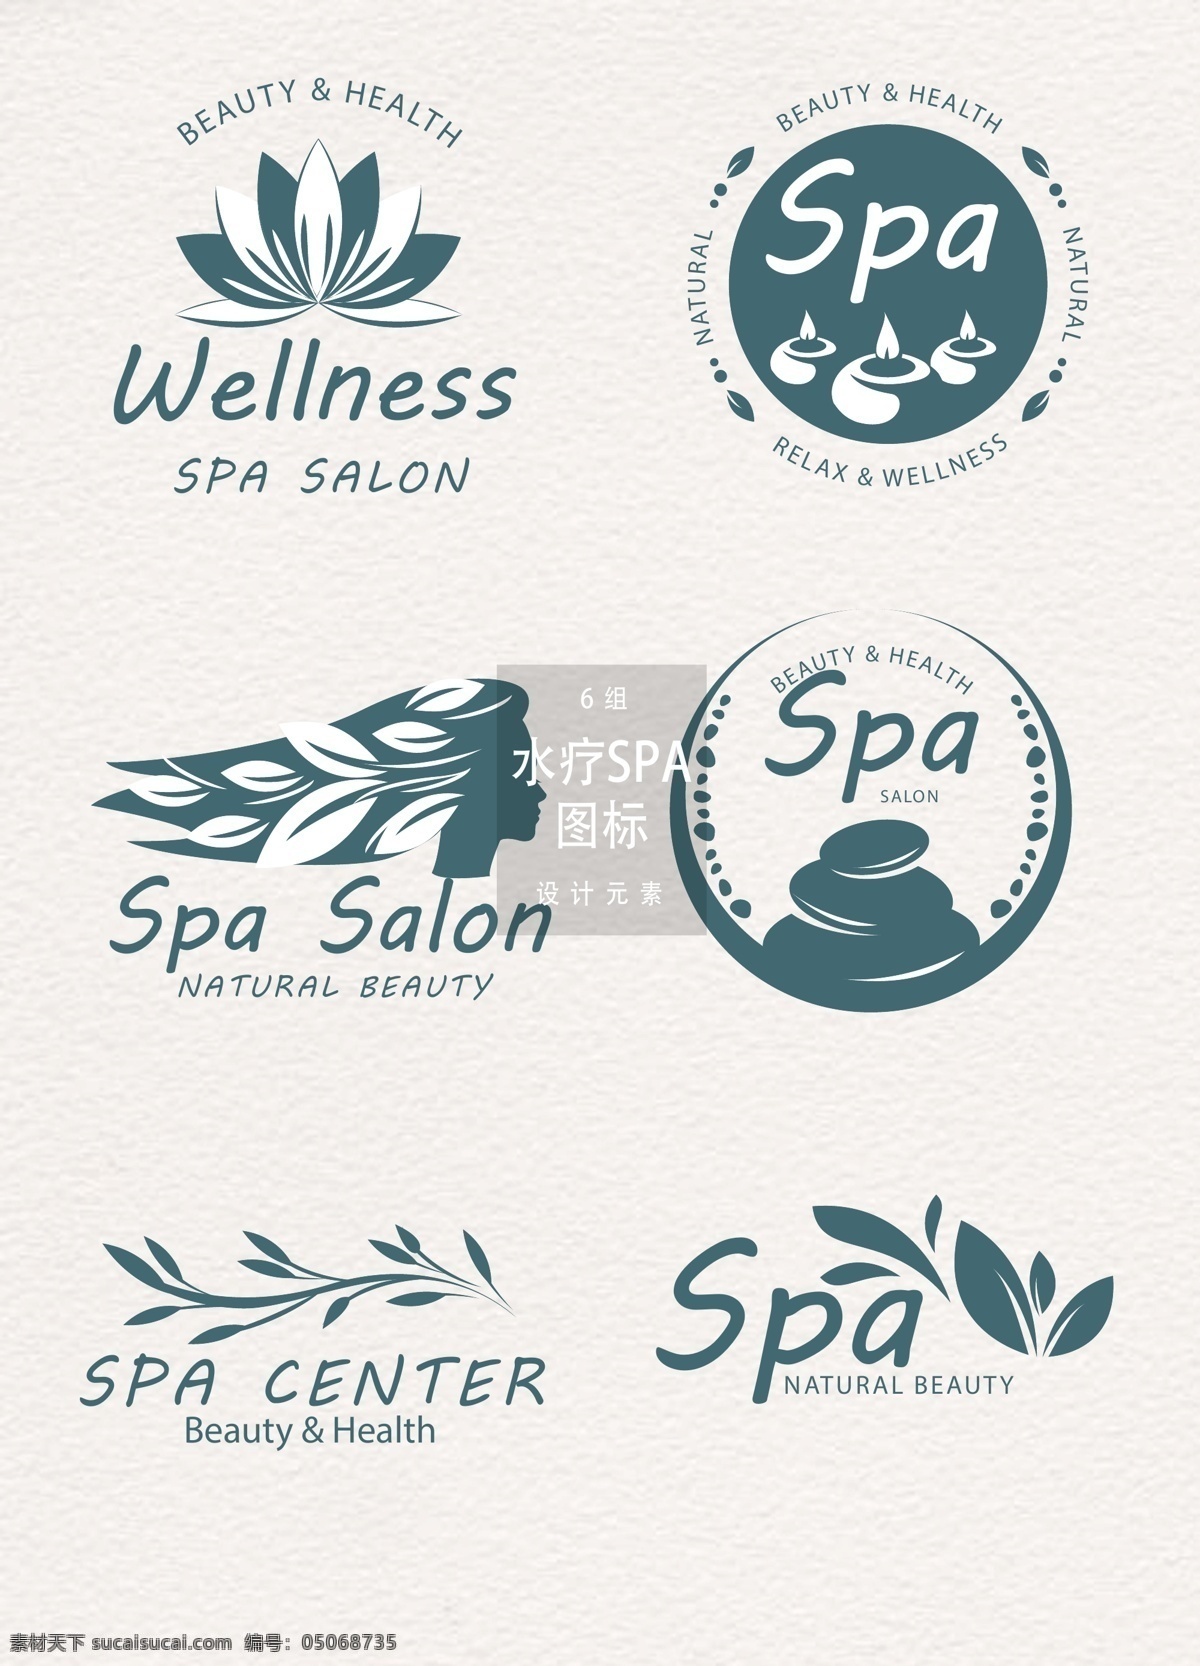 水疗 spa 美容 图标 元素 美容图标 图标设计 spa美容 水疗图标